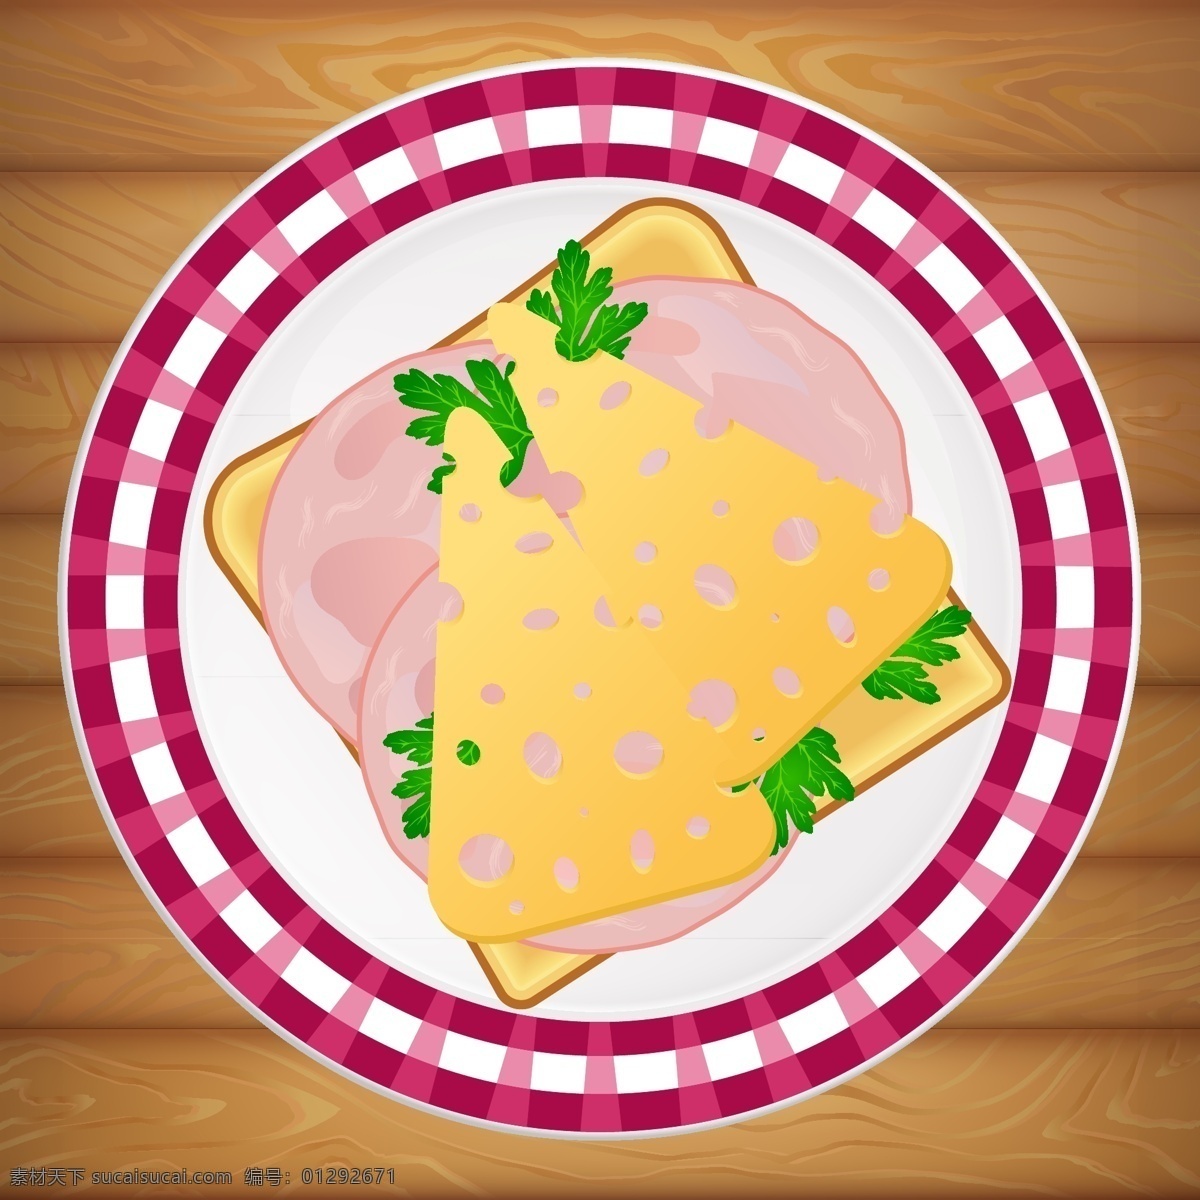 盘子 里 奶酪 三明治 快餐 美食 美味 西餐